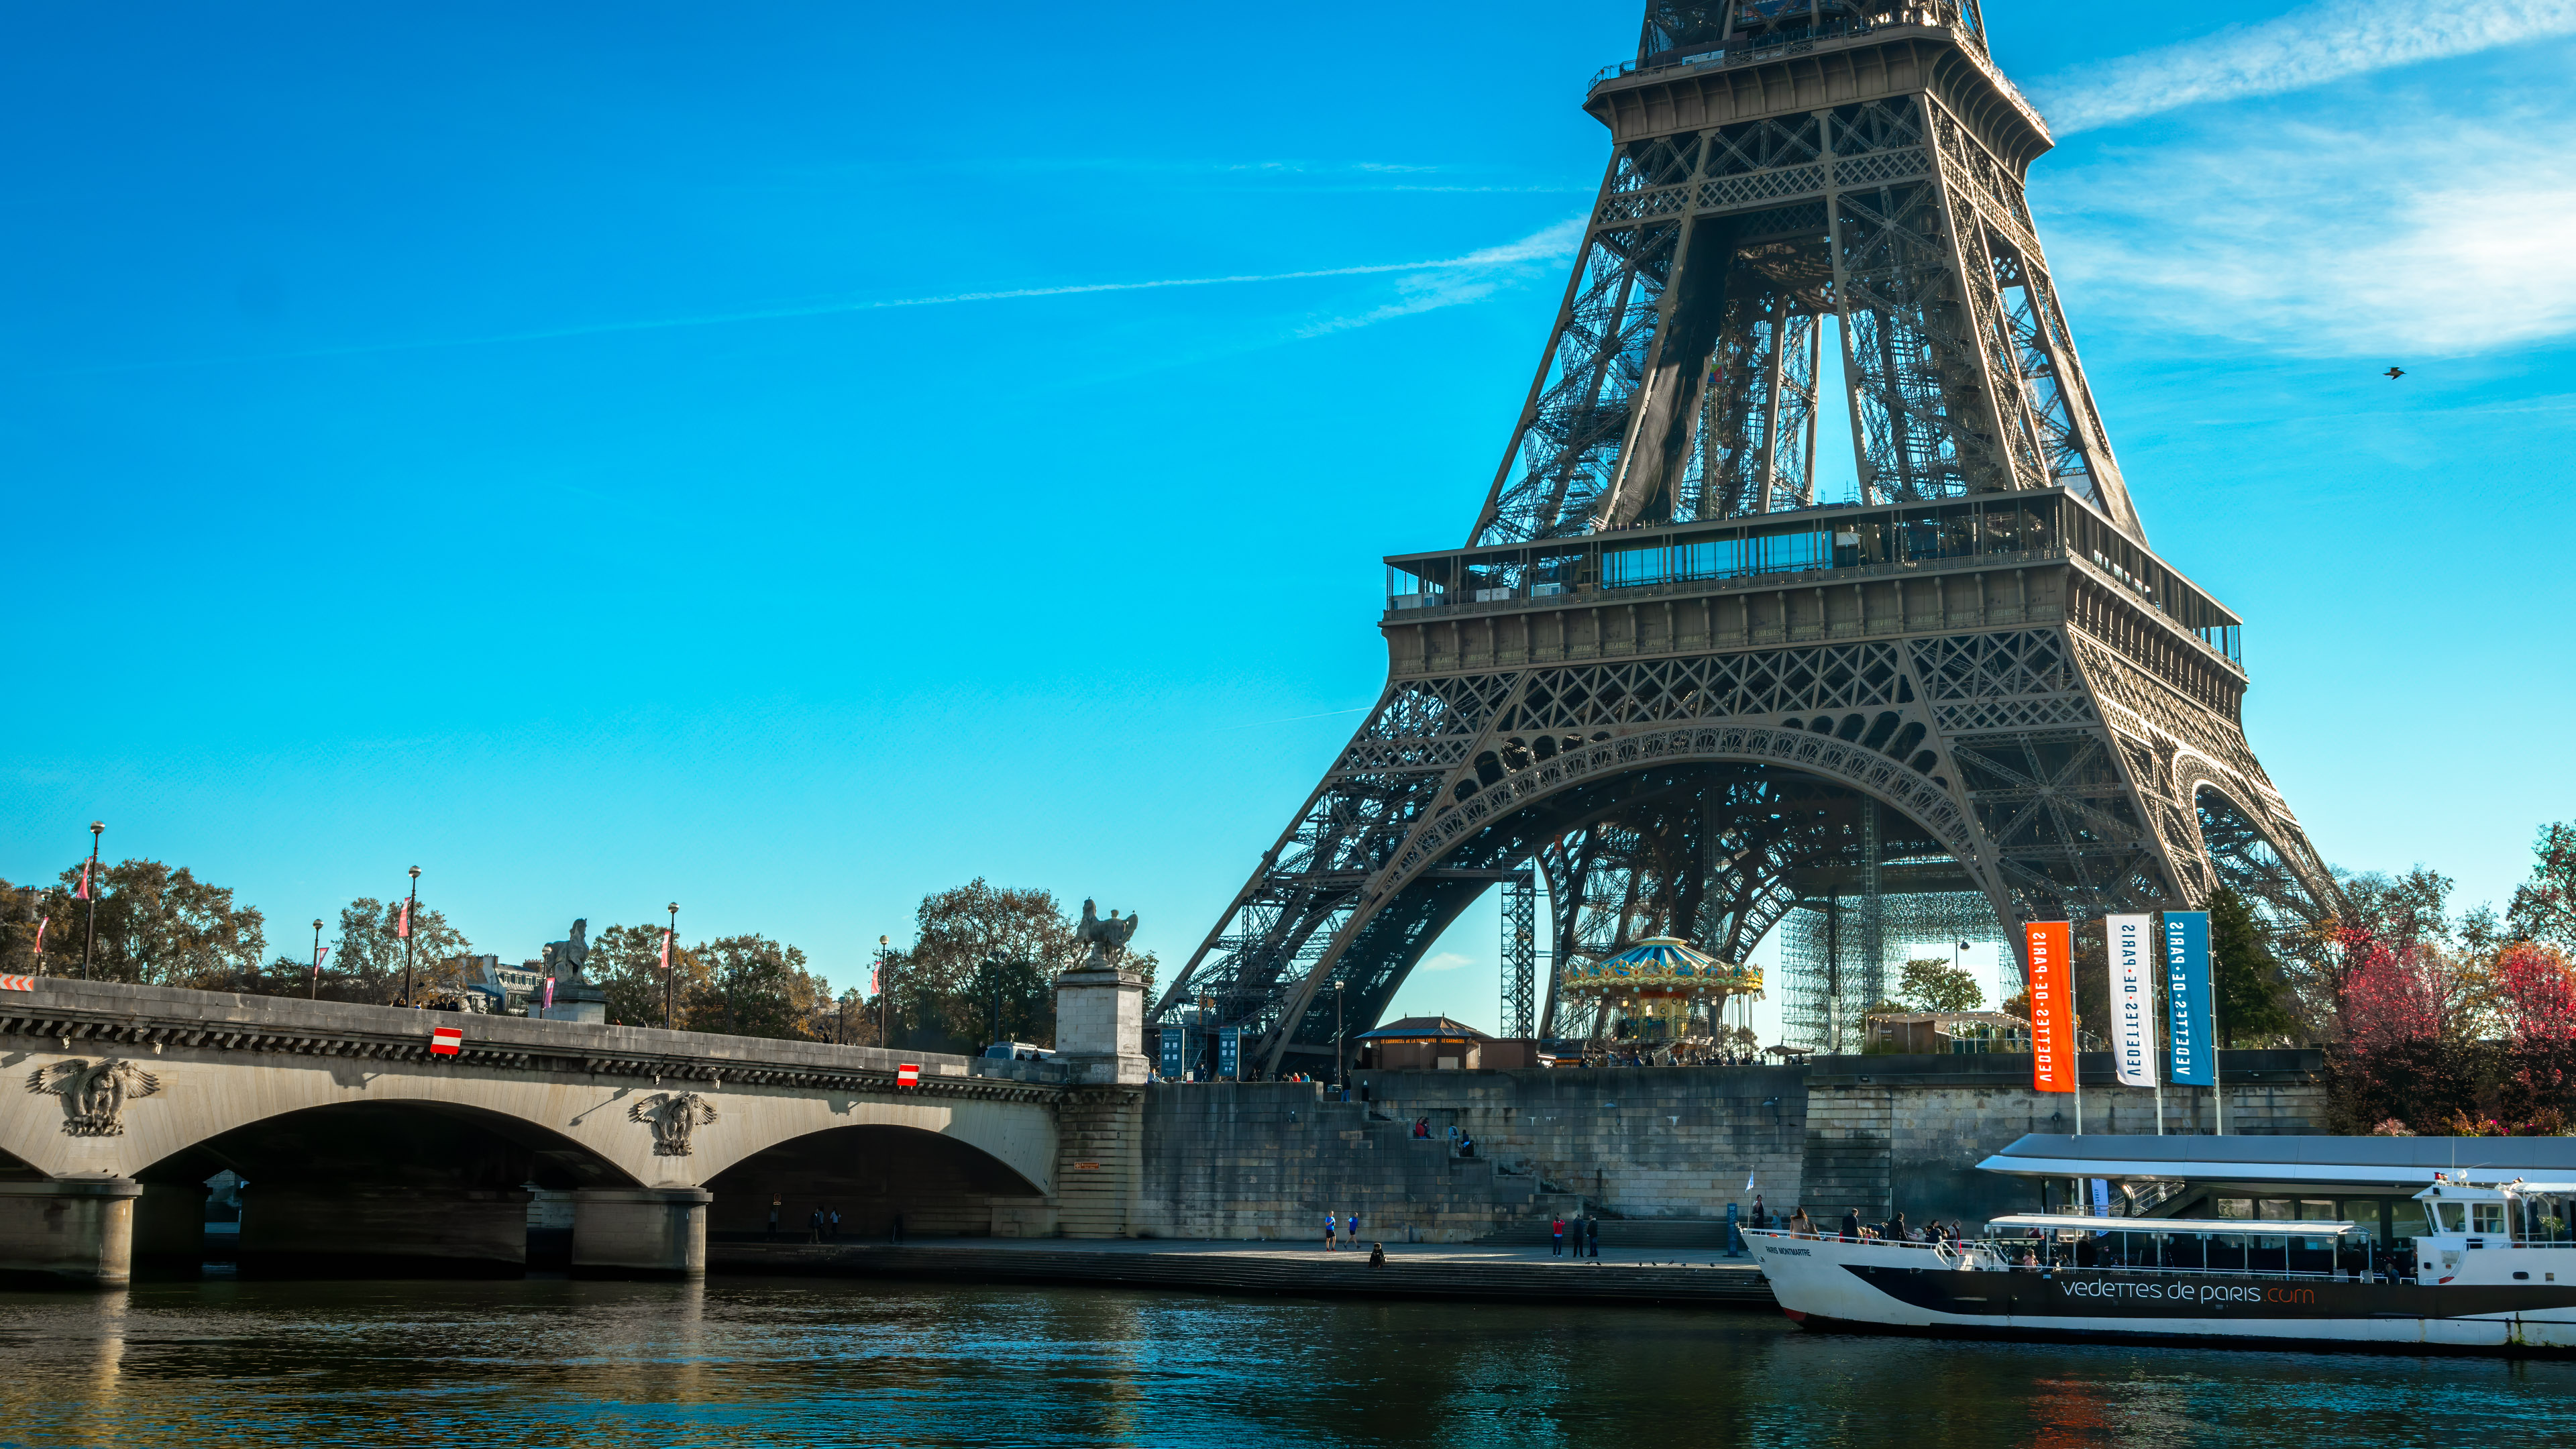 Apportez le charme de Paris à votre écran avec notre fond d'écran 4K gratuit mettant en valeur la tour Eiffel emblématique.